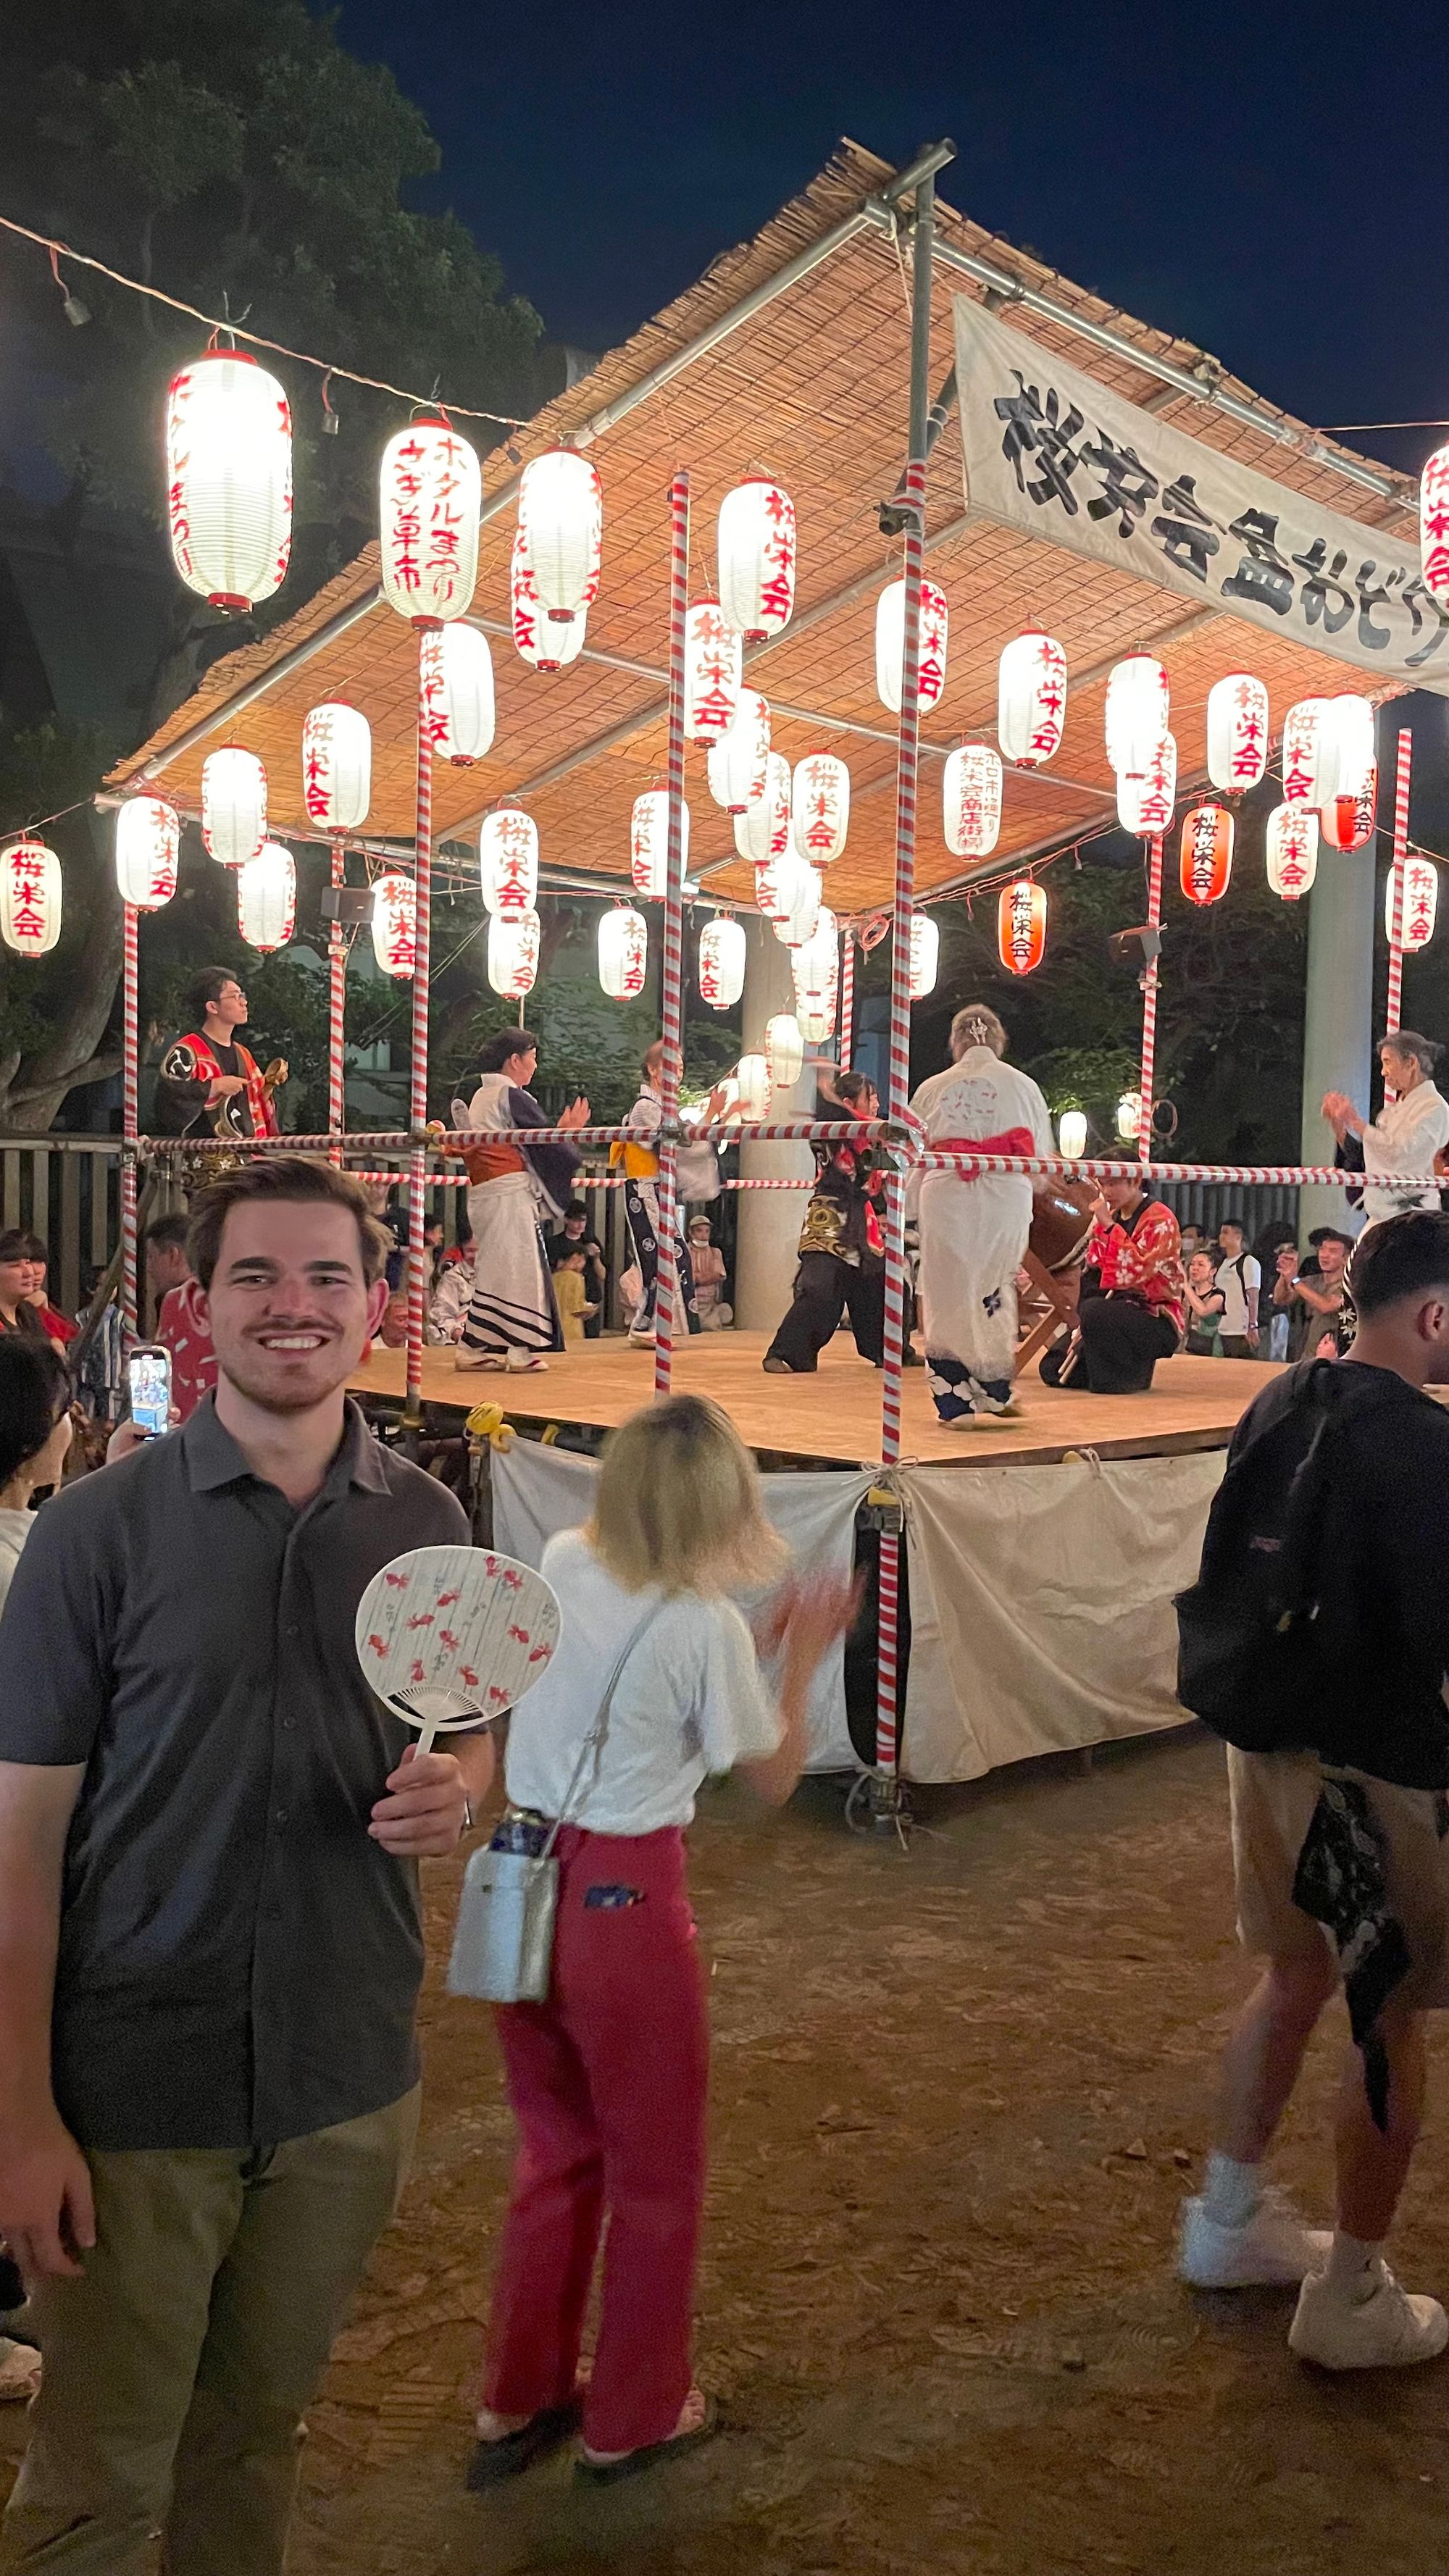 Brad In Japan: A Quick Update!